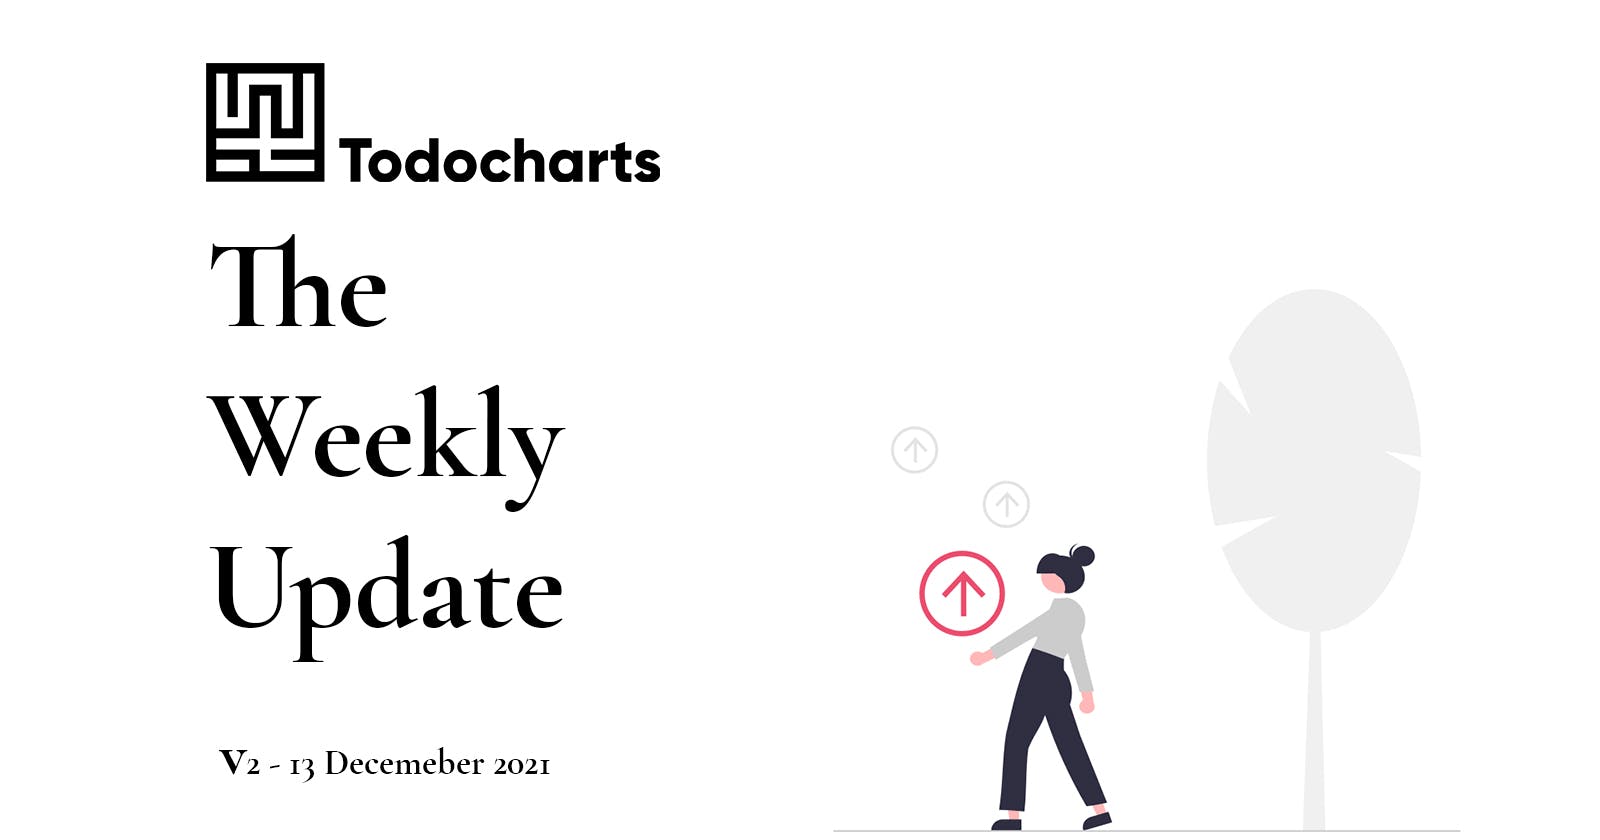 Todocharts Weekly Update 2